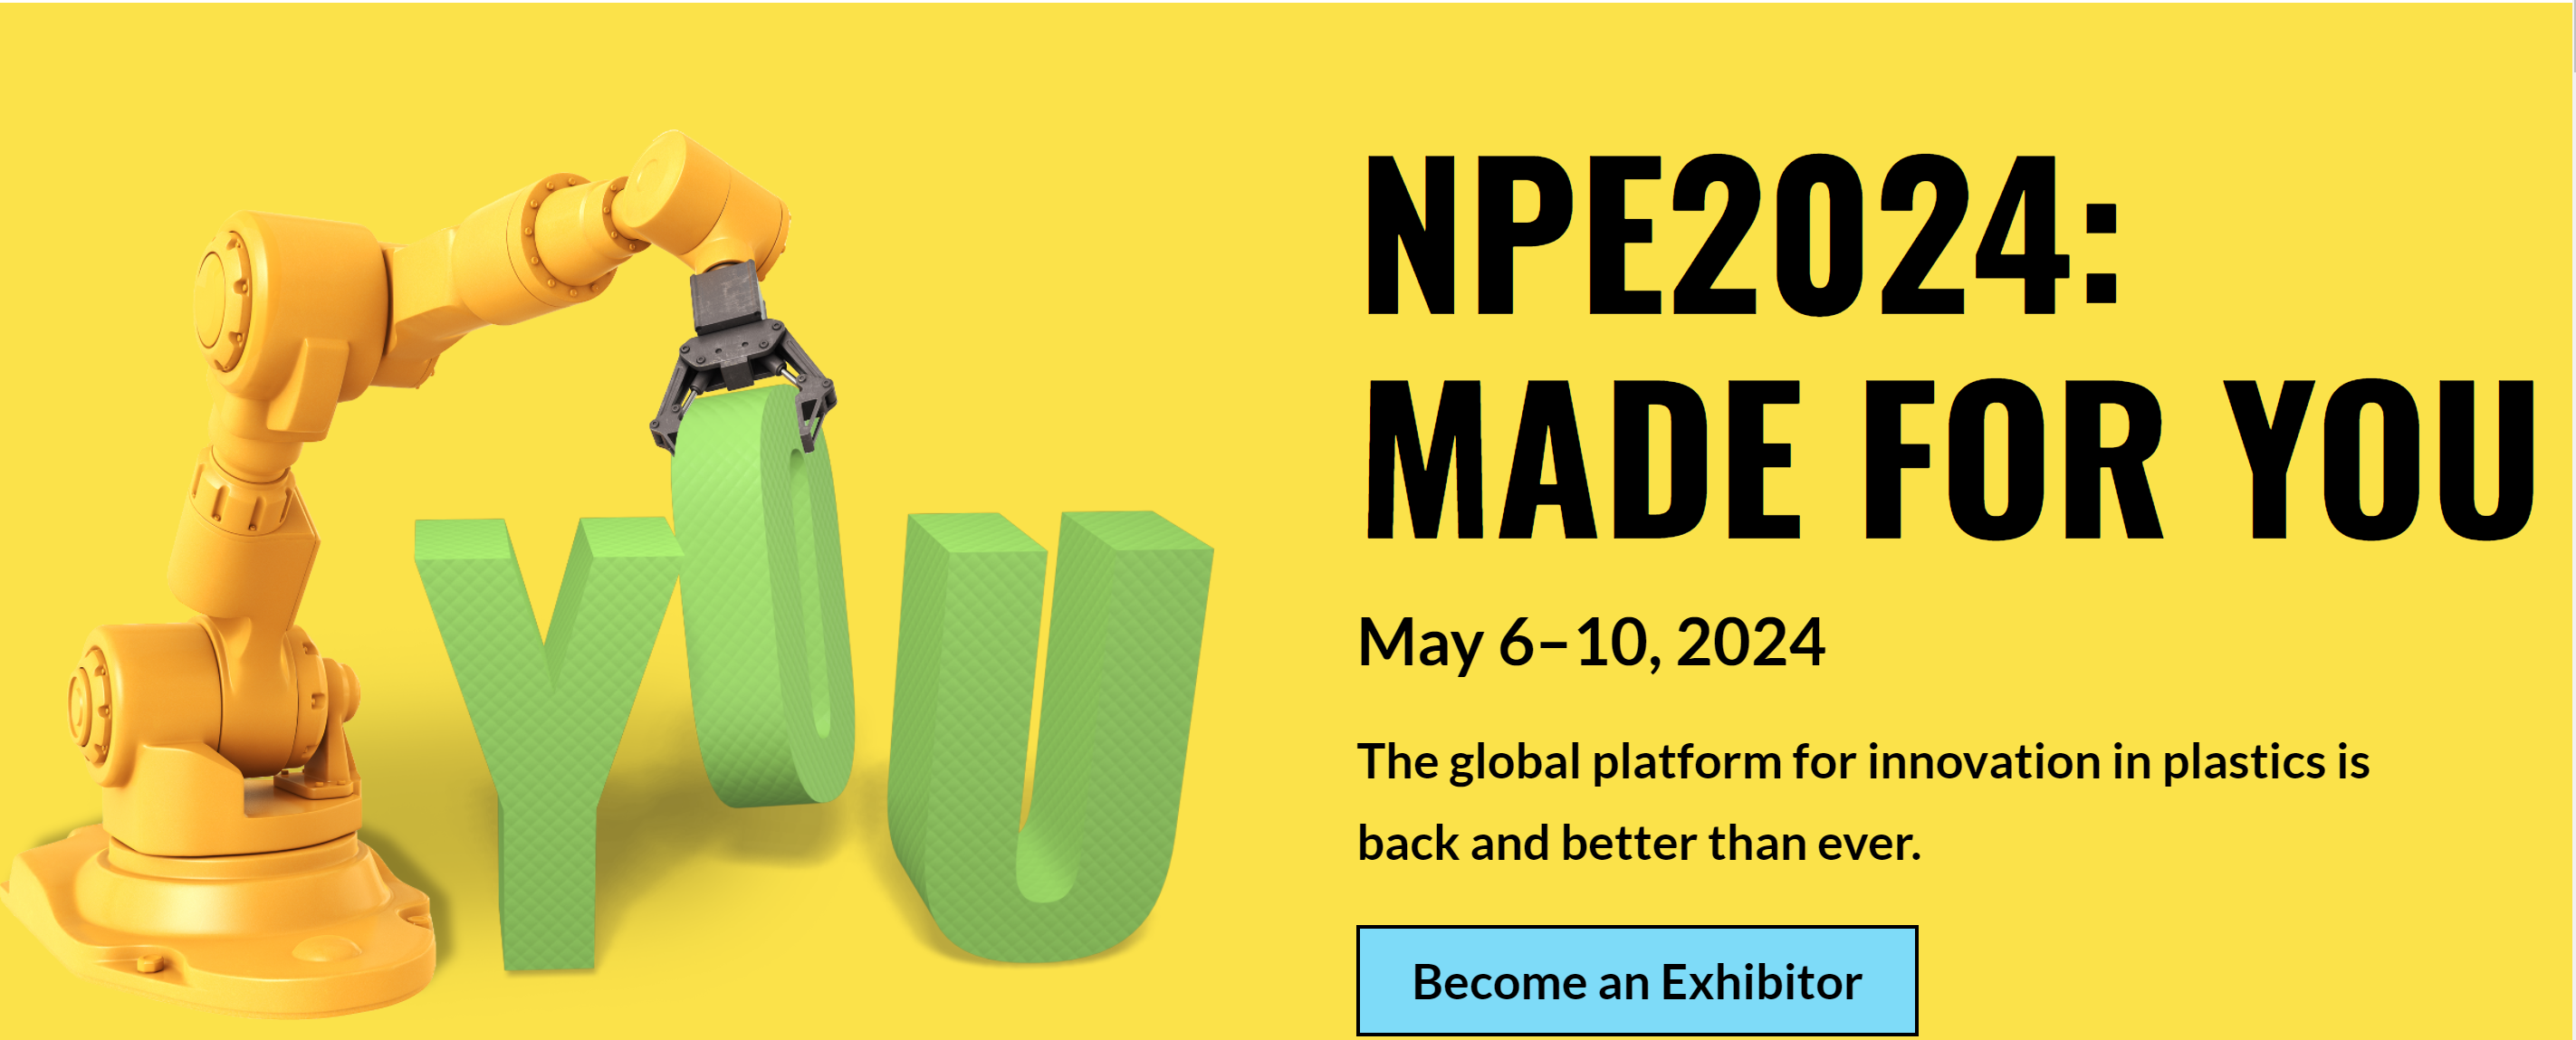 2024年美国NPE美国塑料展NPE2024